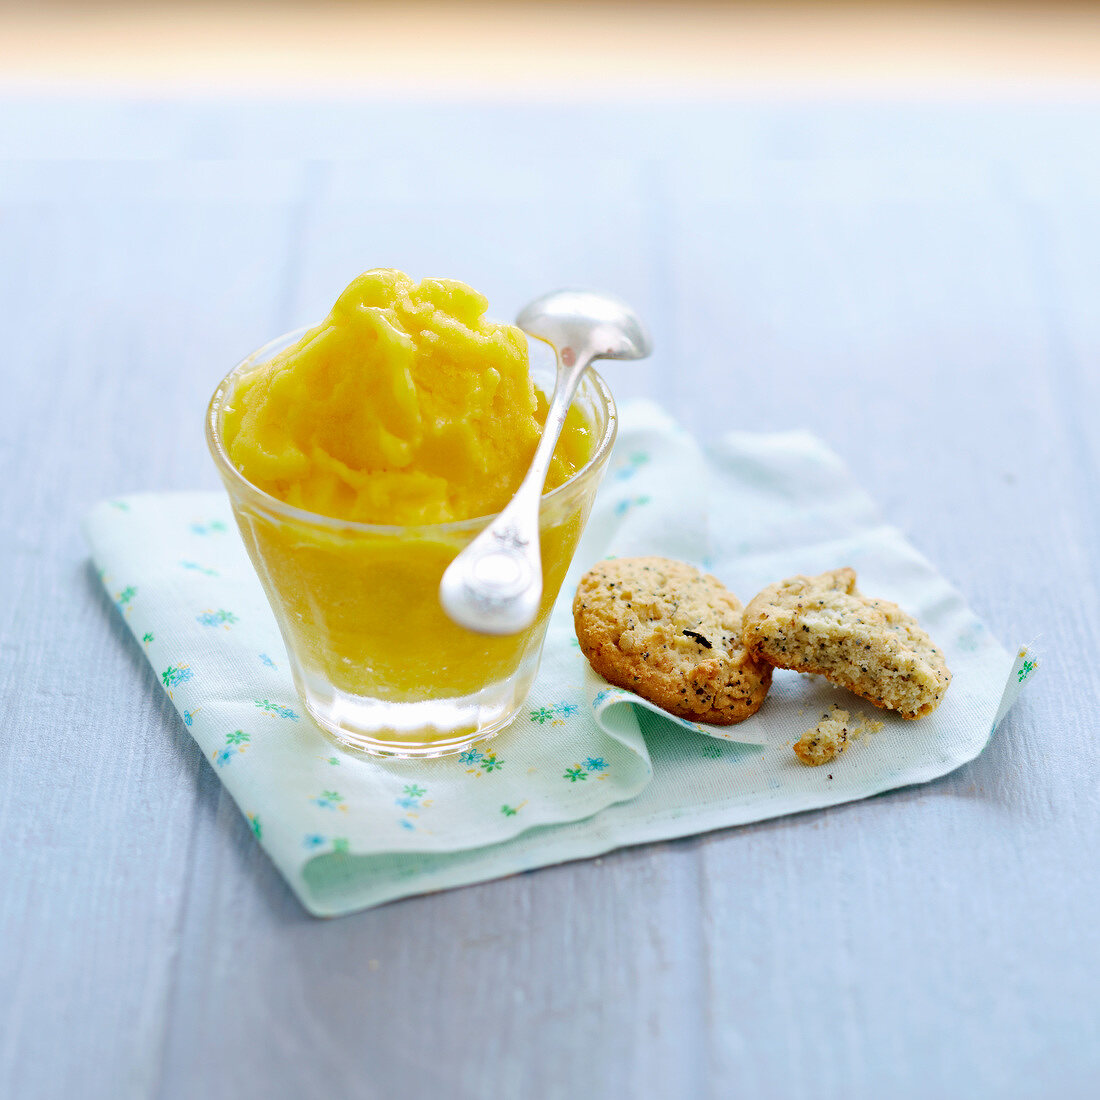 Saffron-flavored peach cream dessert with poppyseed cookies